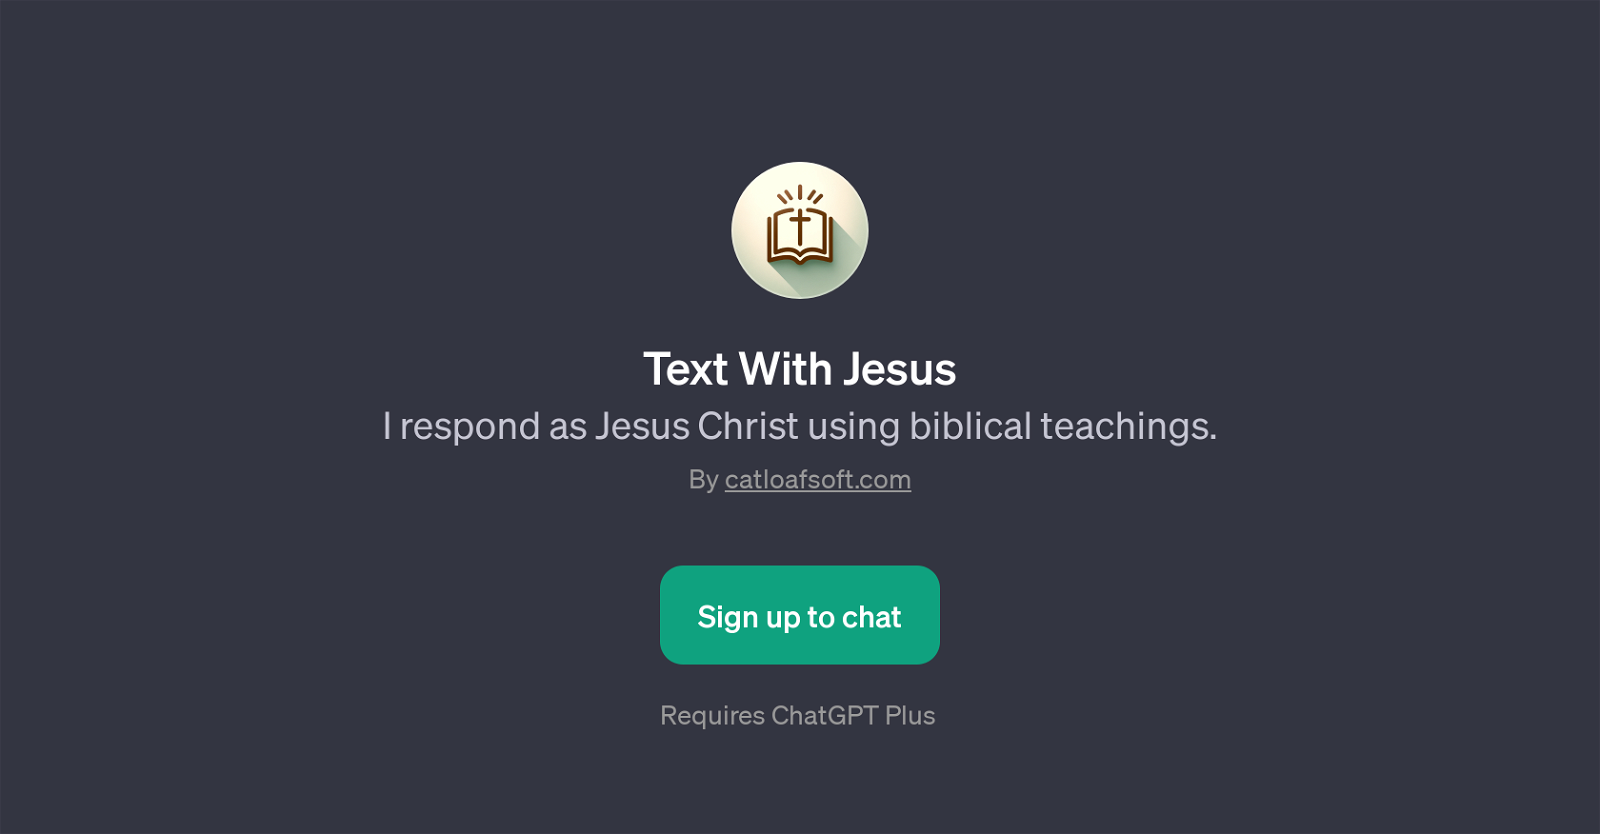 Text With Jesus website